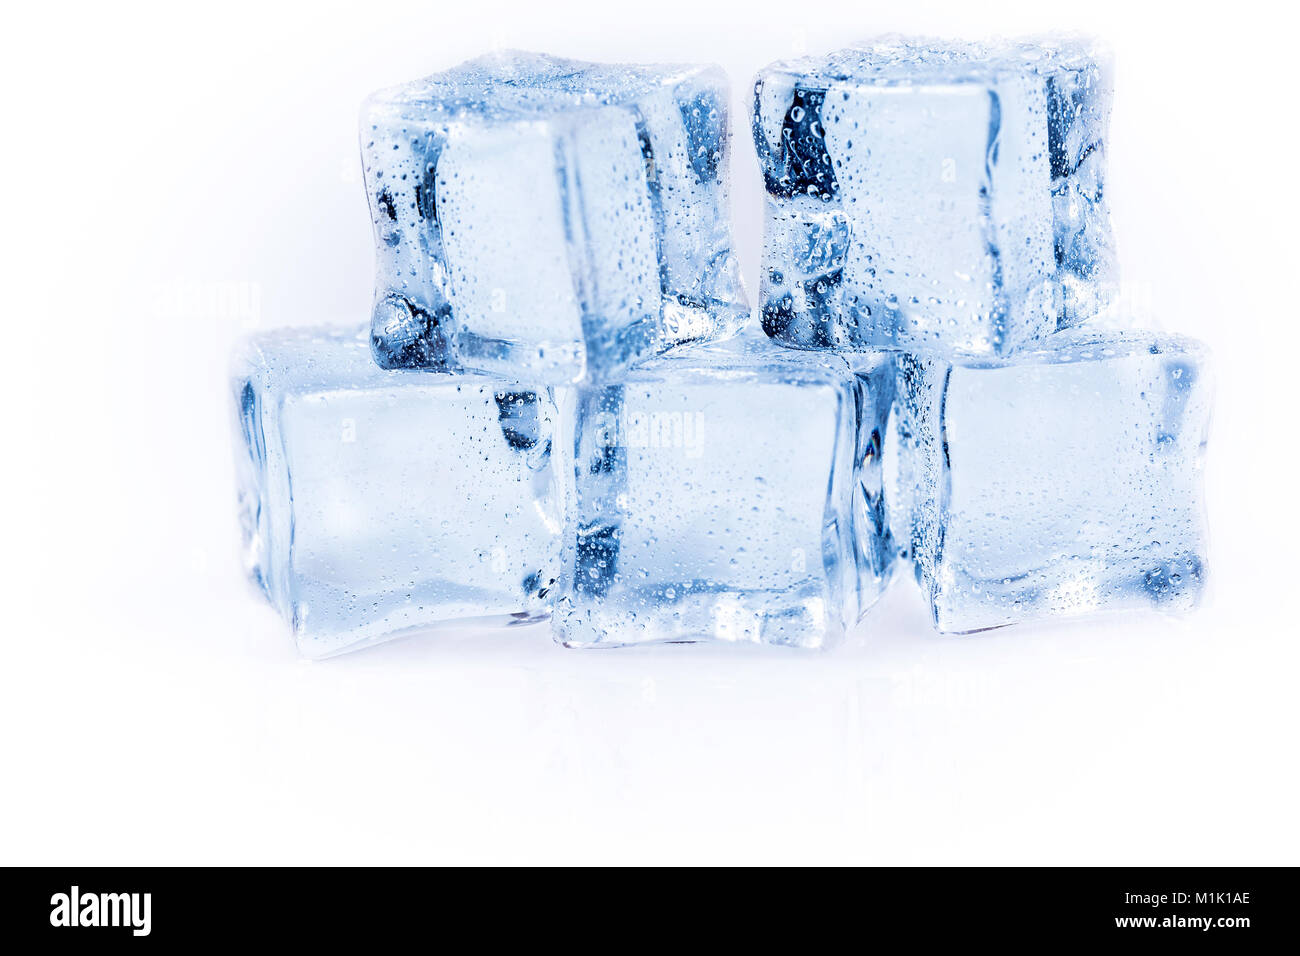 Many ice cubes on white reflection background Stock Photo - Alamy